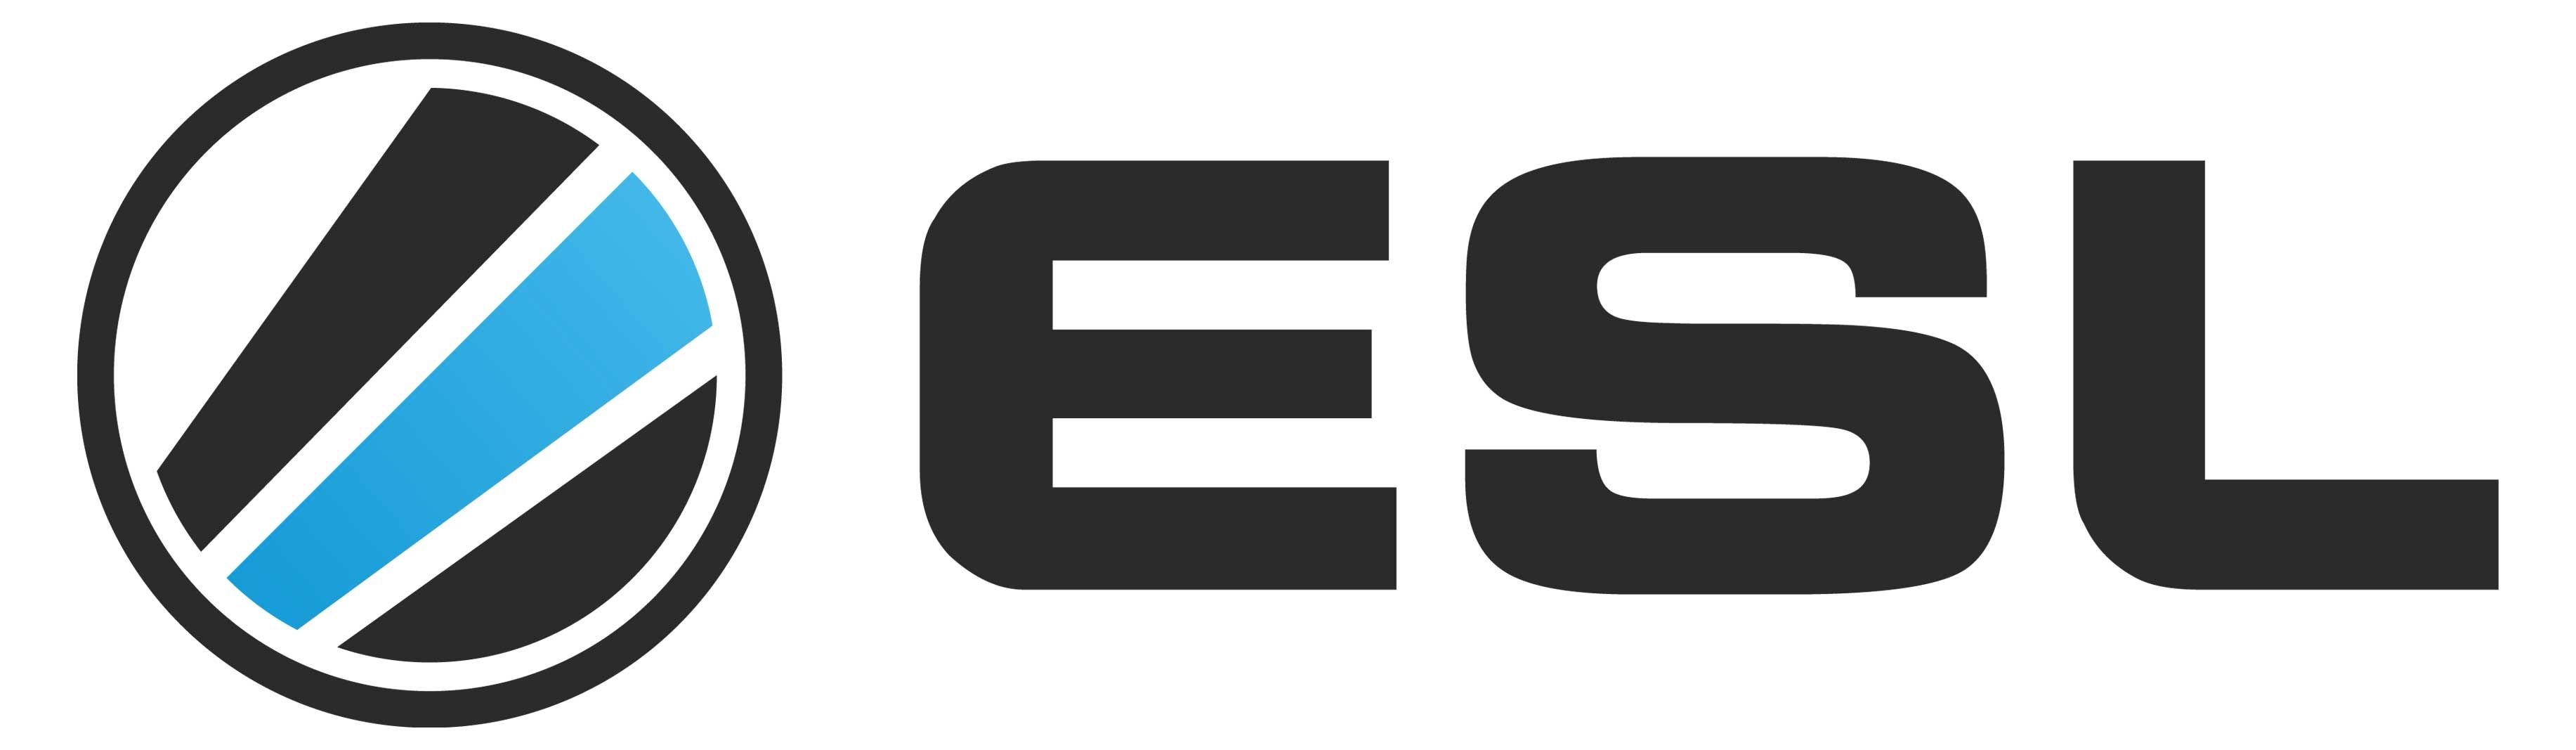 лого есл